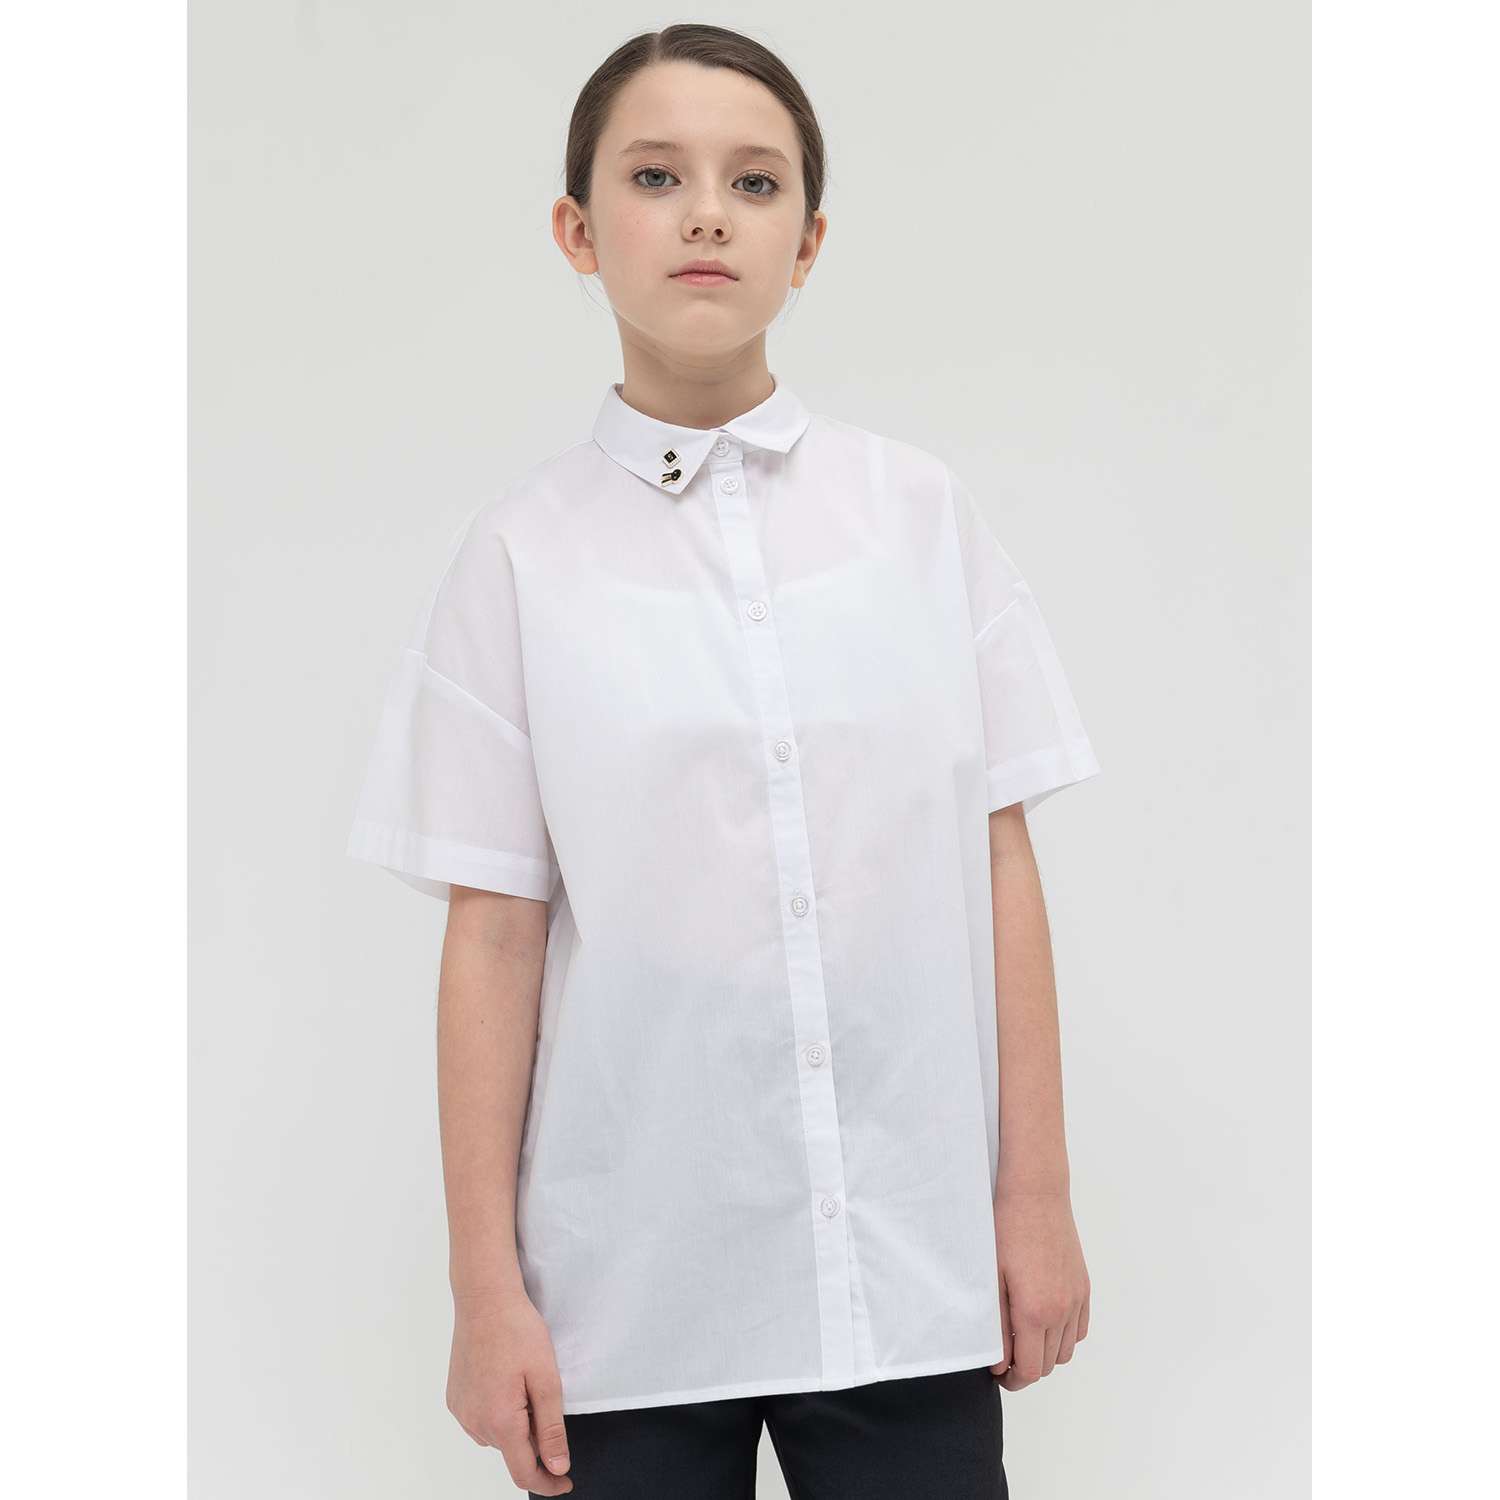 Рубашка PELICAN GWCT8120/Белый(2) - фото 1